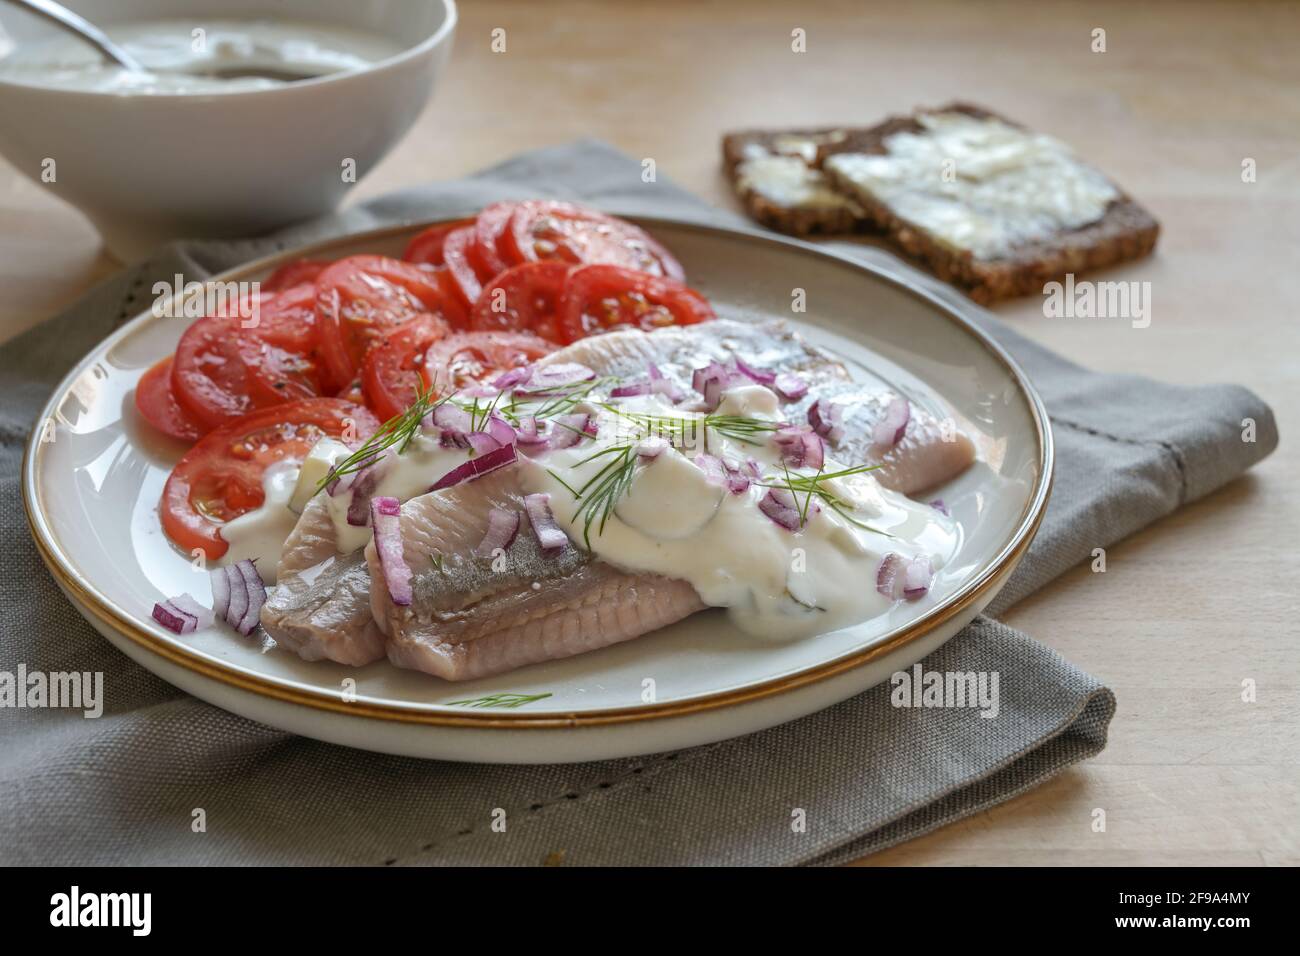 Filets de hareng salé traditionnel hollandais également appelé maatje avec sauce à la crème, oignons rouges, garniture d'aneth et salade de tomates servis sur une assiette sur un bois Banque D'Images